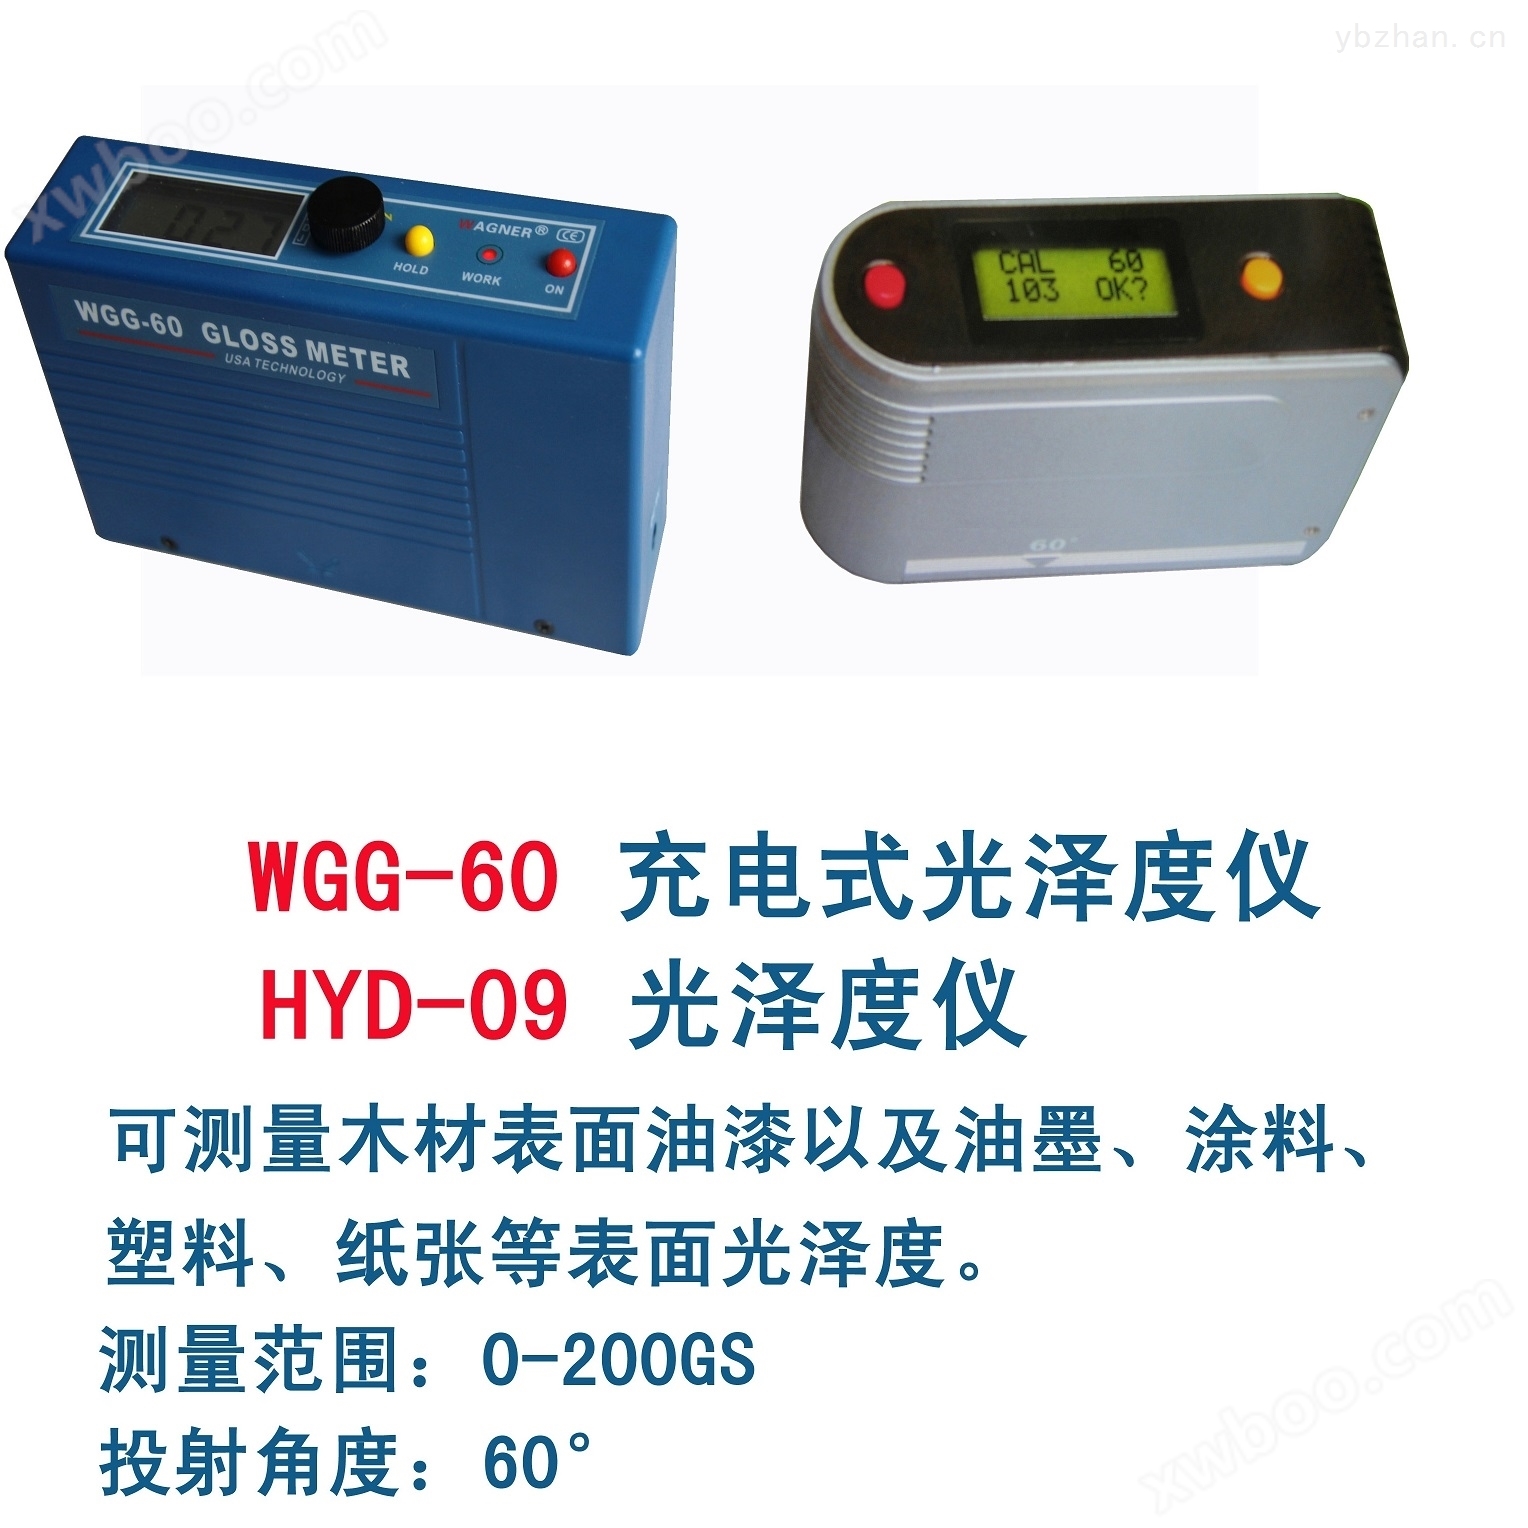 HYD-09光泽度仪|涂料光泽度仪